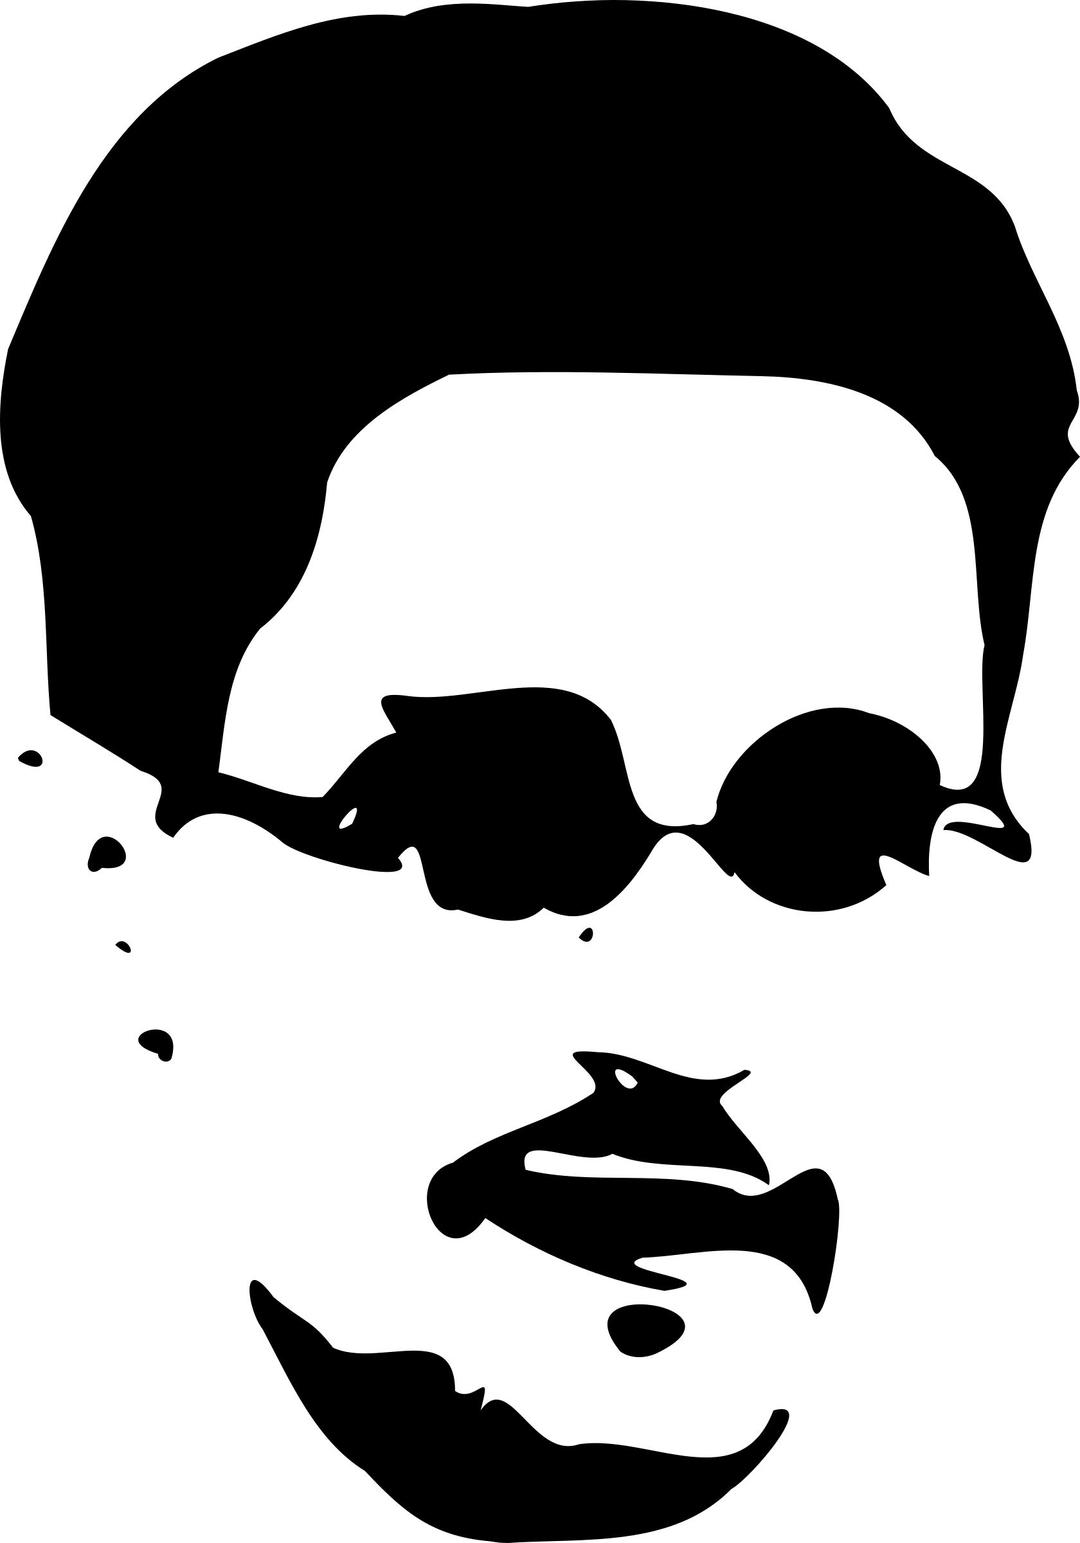 Snowden portrait bw png transparent